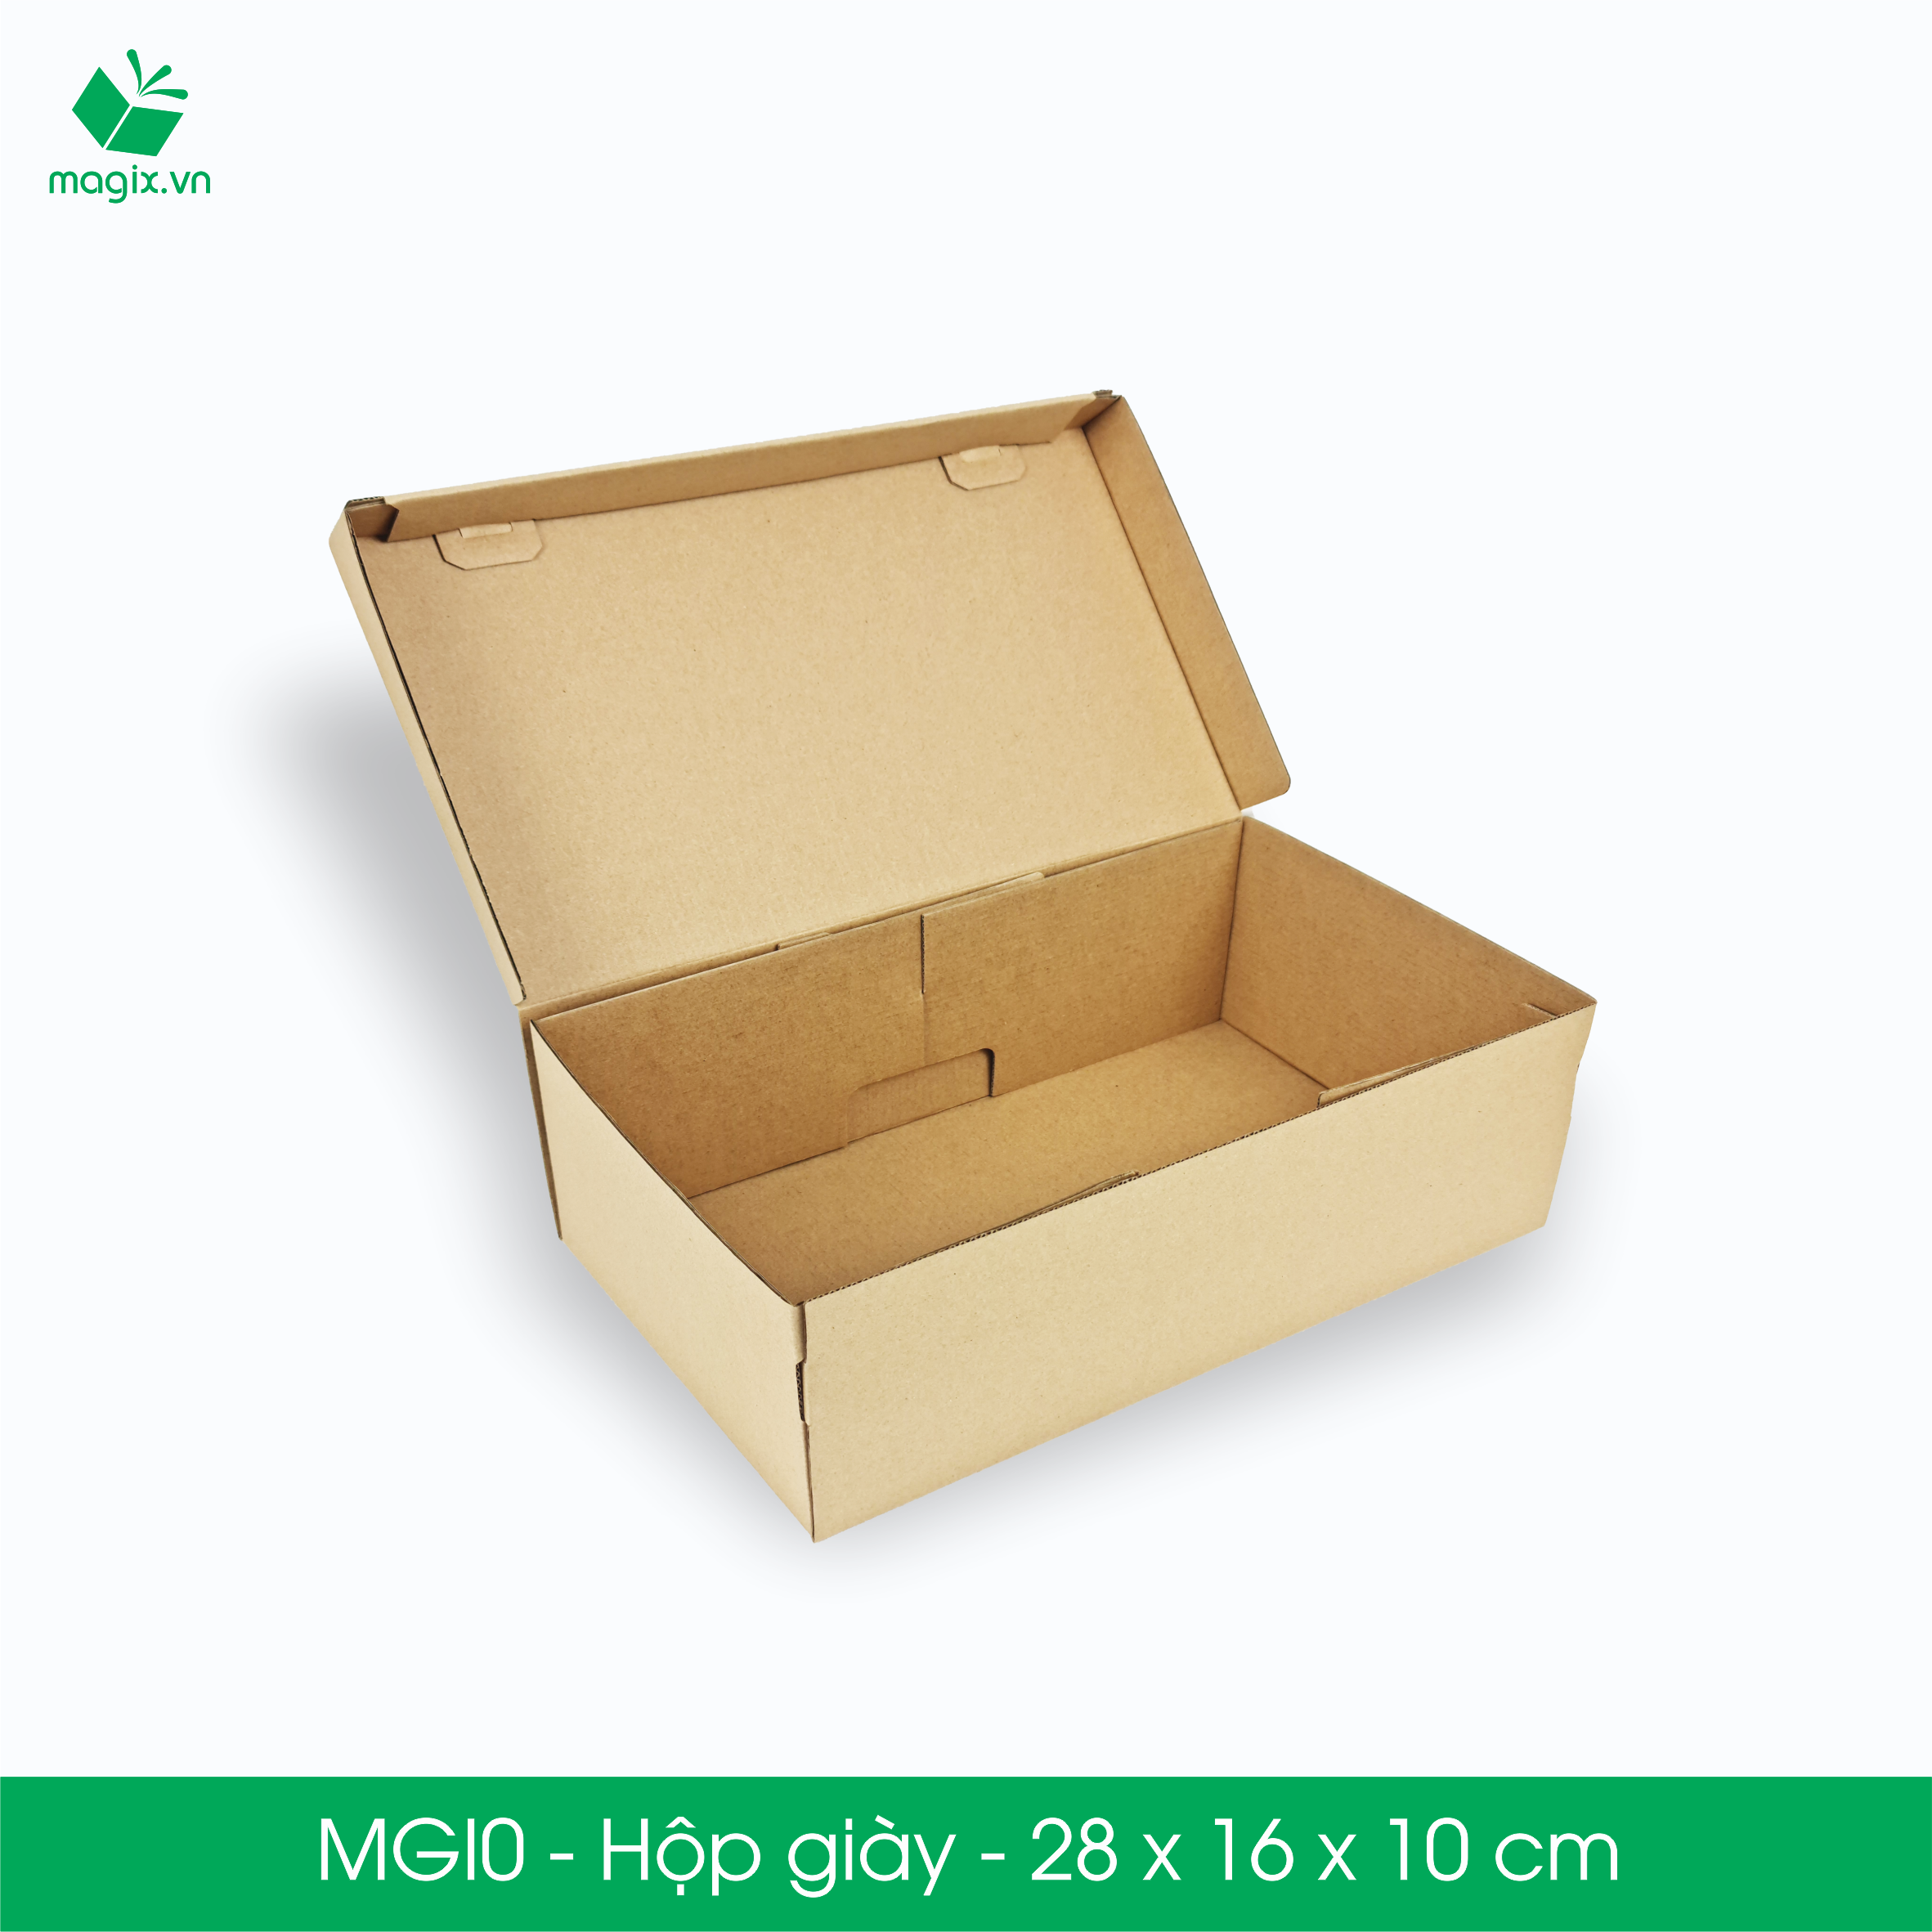 MGI0 - 28x16x10cm - 100 Hộp giày - Thùng hộp carton trơn đóng hàng